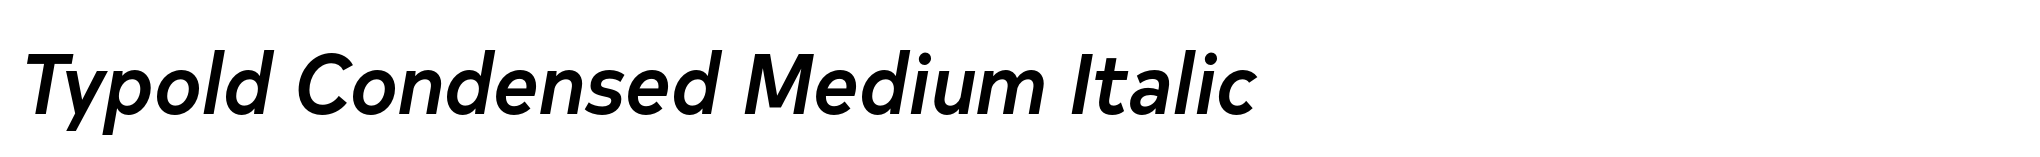 Typold Condensed Medium Italic image